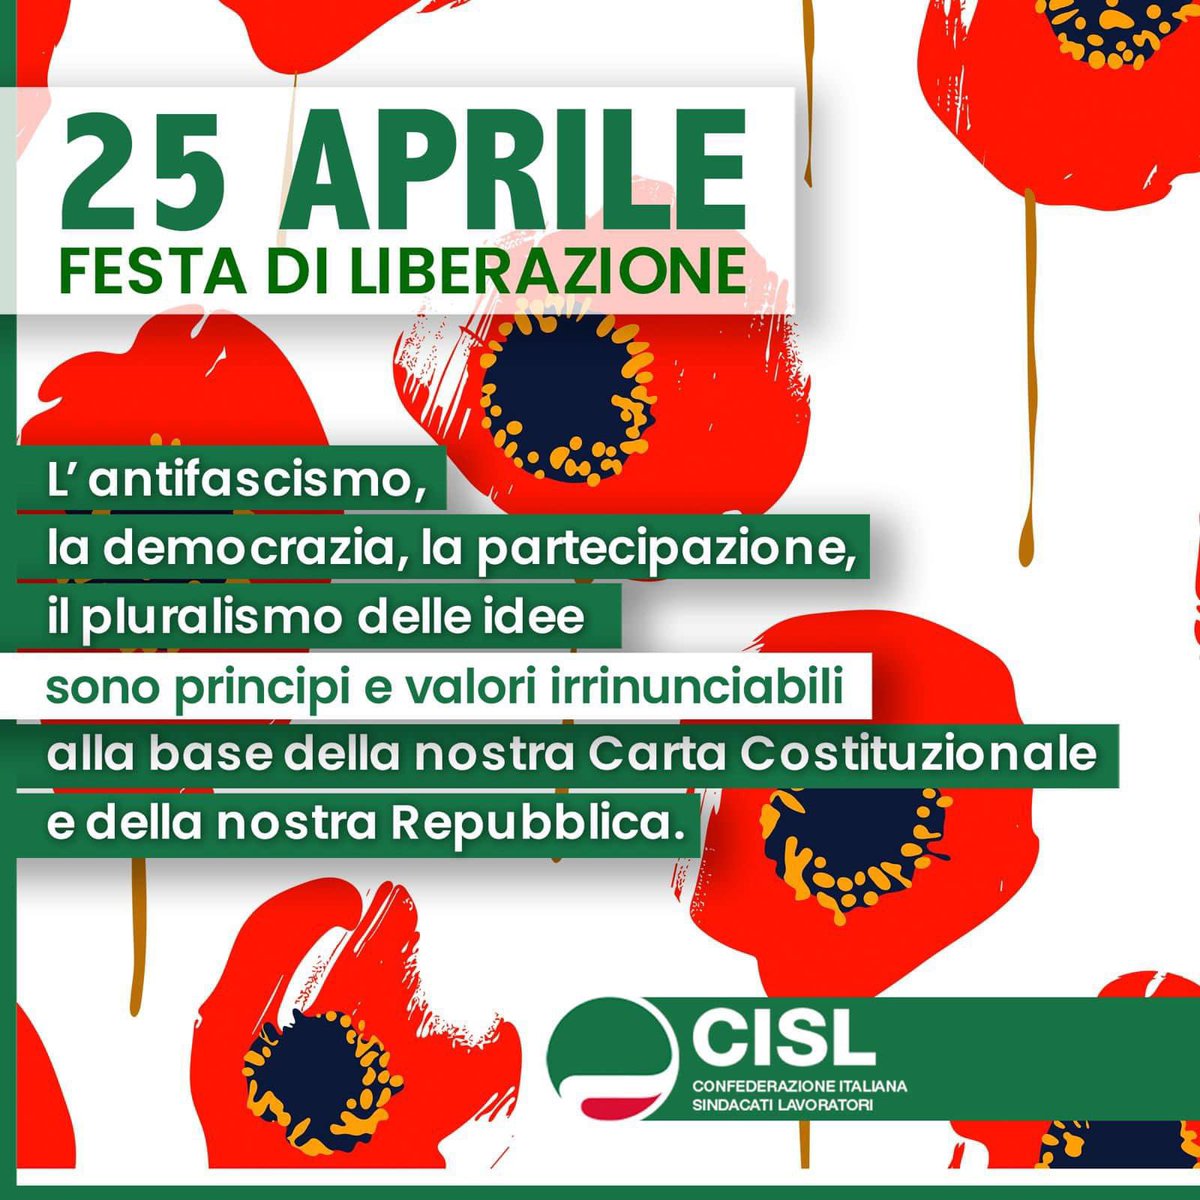 🟢 #LuigiSbarra: “Il 25 aprile è un giorno di festa che deve unire tutti. L’antifascismo, la democrazia, il lavoro partecipe e dignitoso, il pluralismo delle idee, la partecipazione sono valori irrinunciabili, alla base della nostra Carta Costituzionale e della Repubblica.